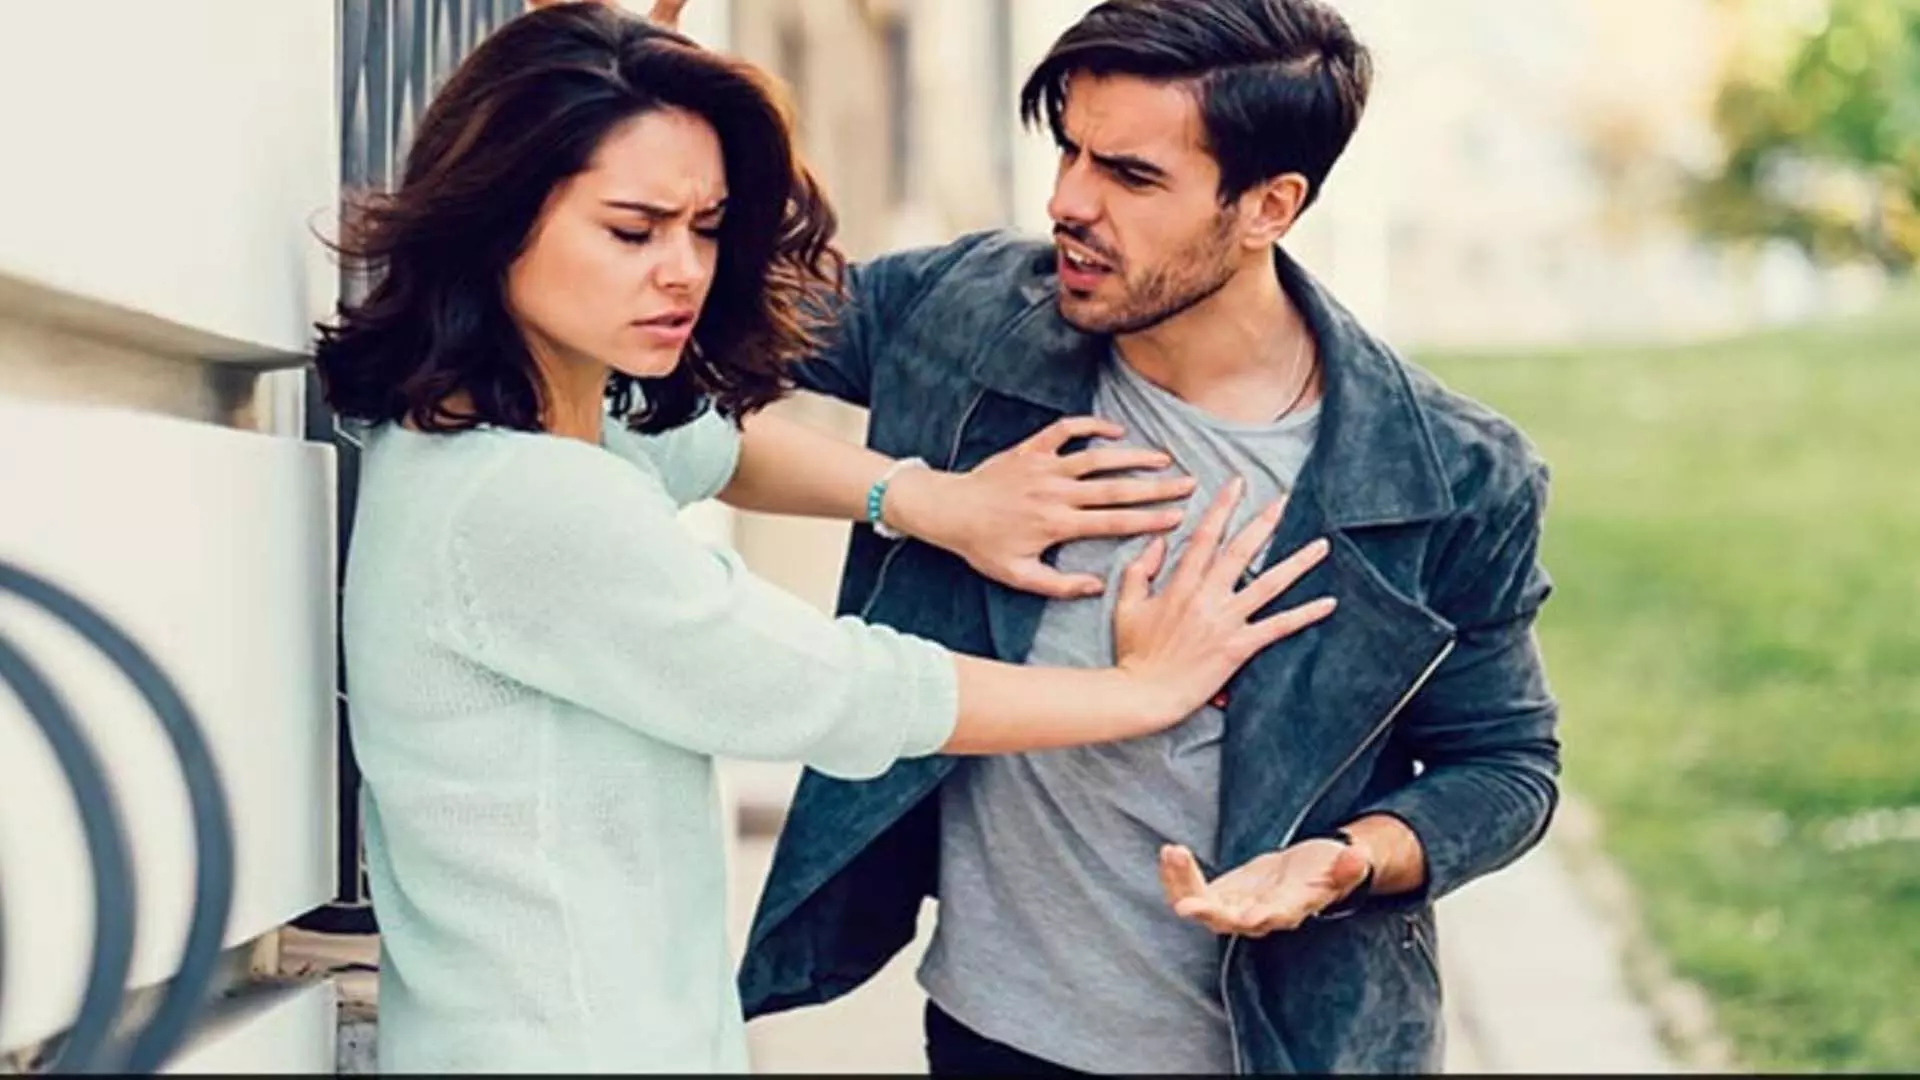 Relationship:लड़कों की इन 5 गलतियों के कारण टूट जाते है रिश्ते जानें और संभले